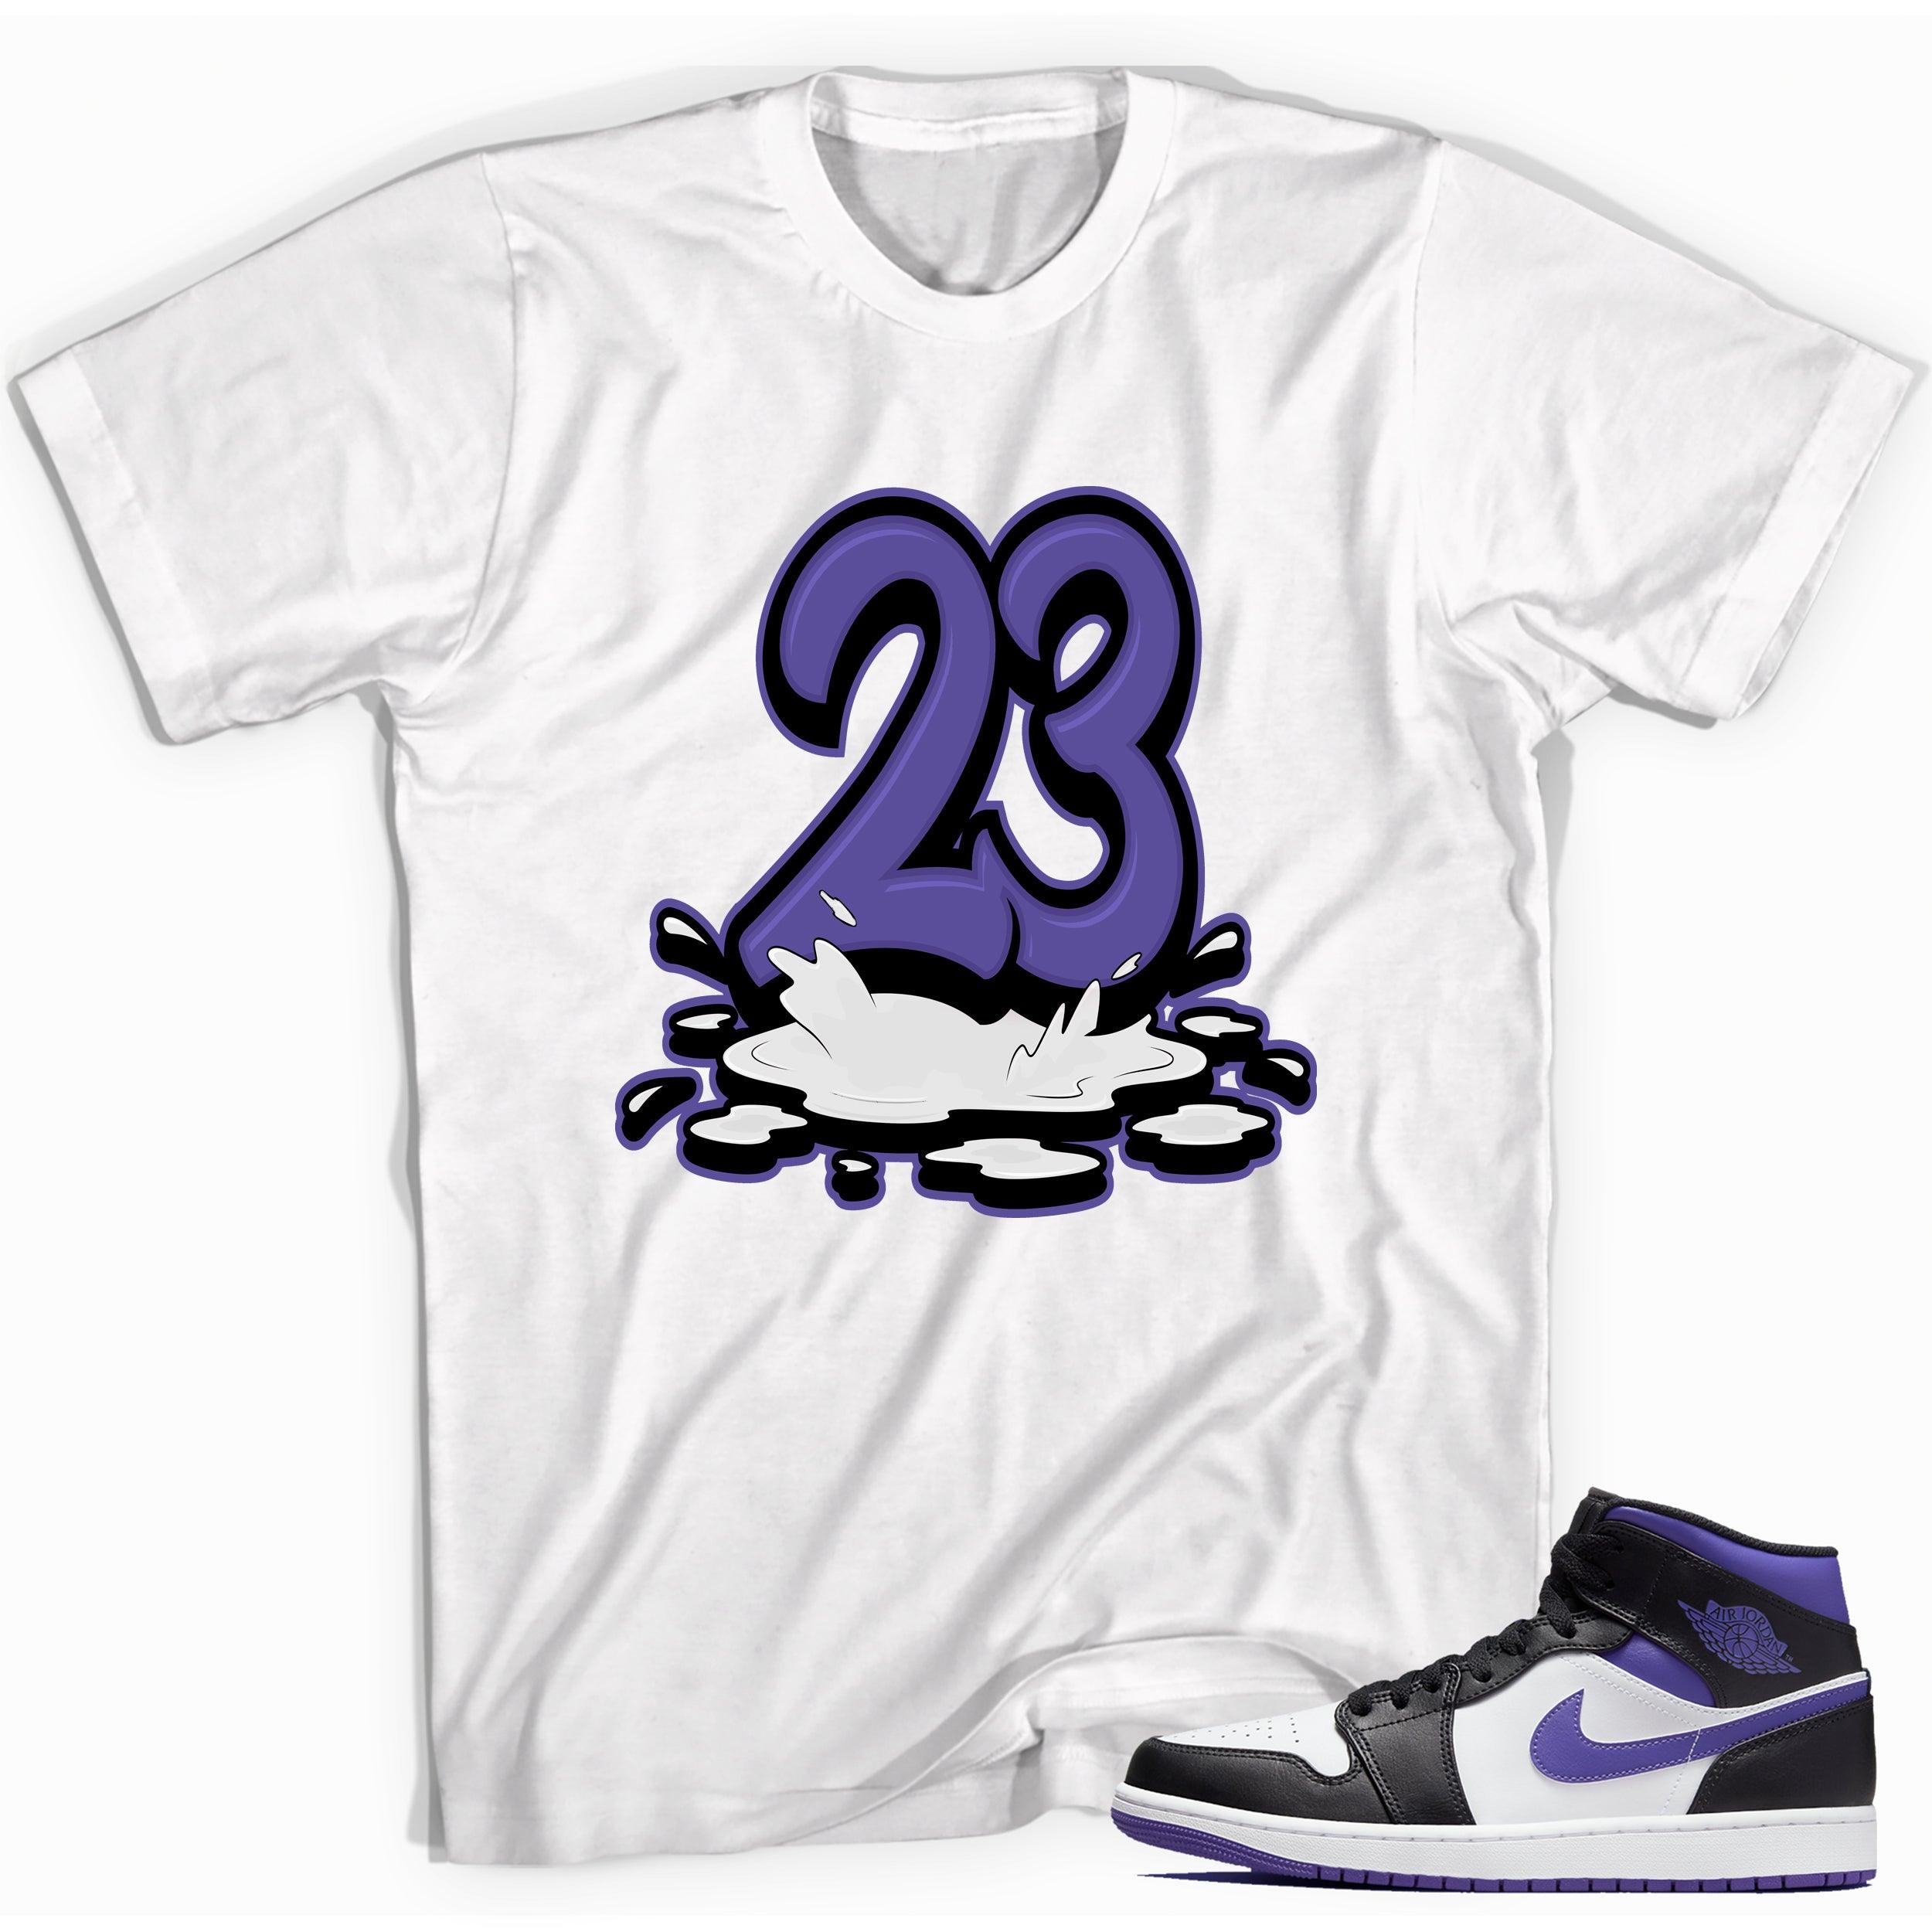 Number 23 Melting Shirt AJ 1 Mid White Black Purple photo